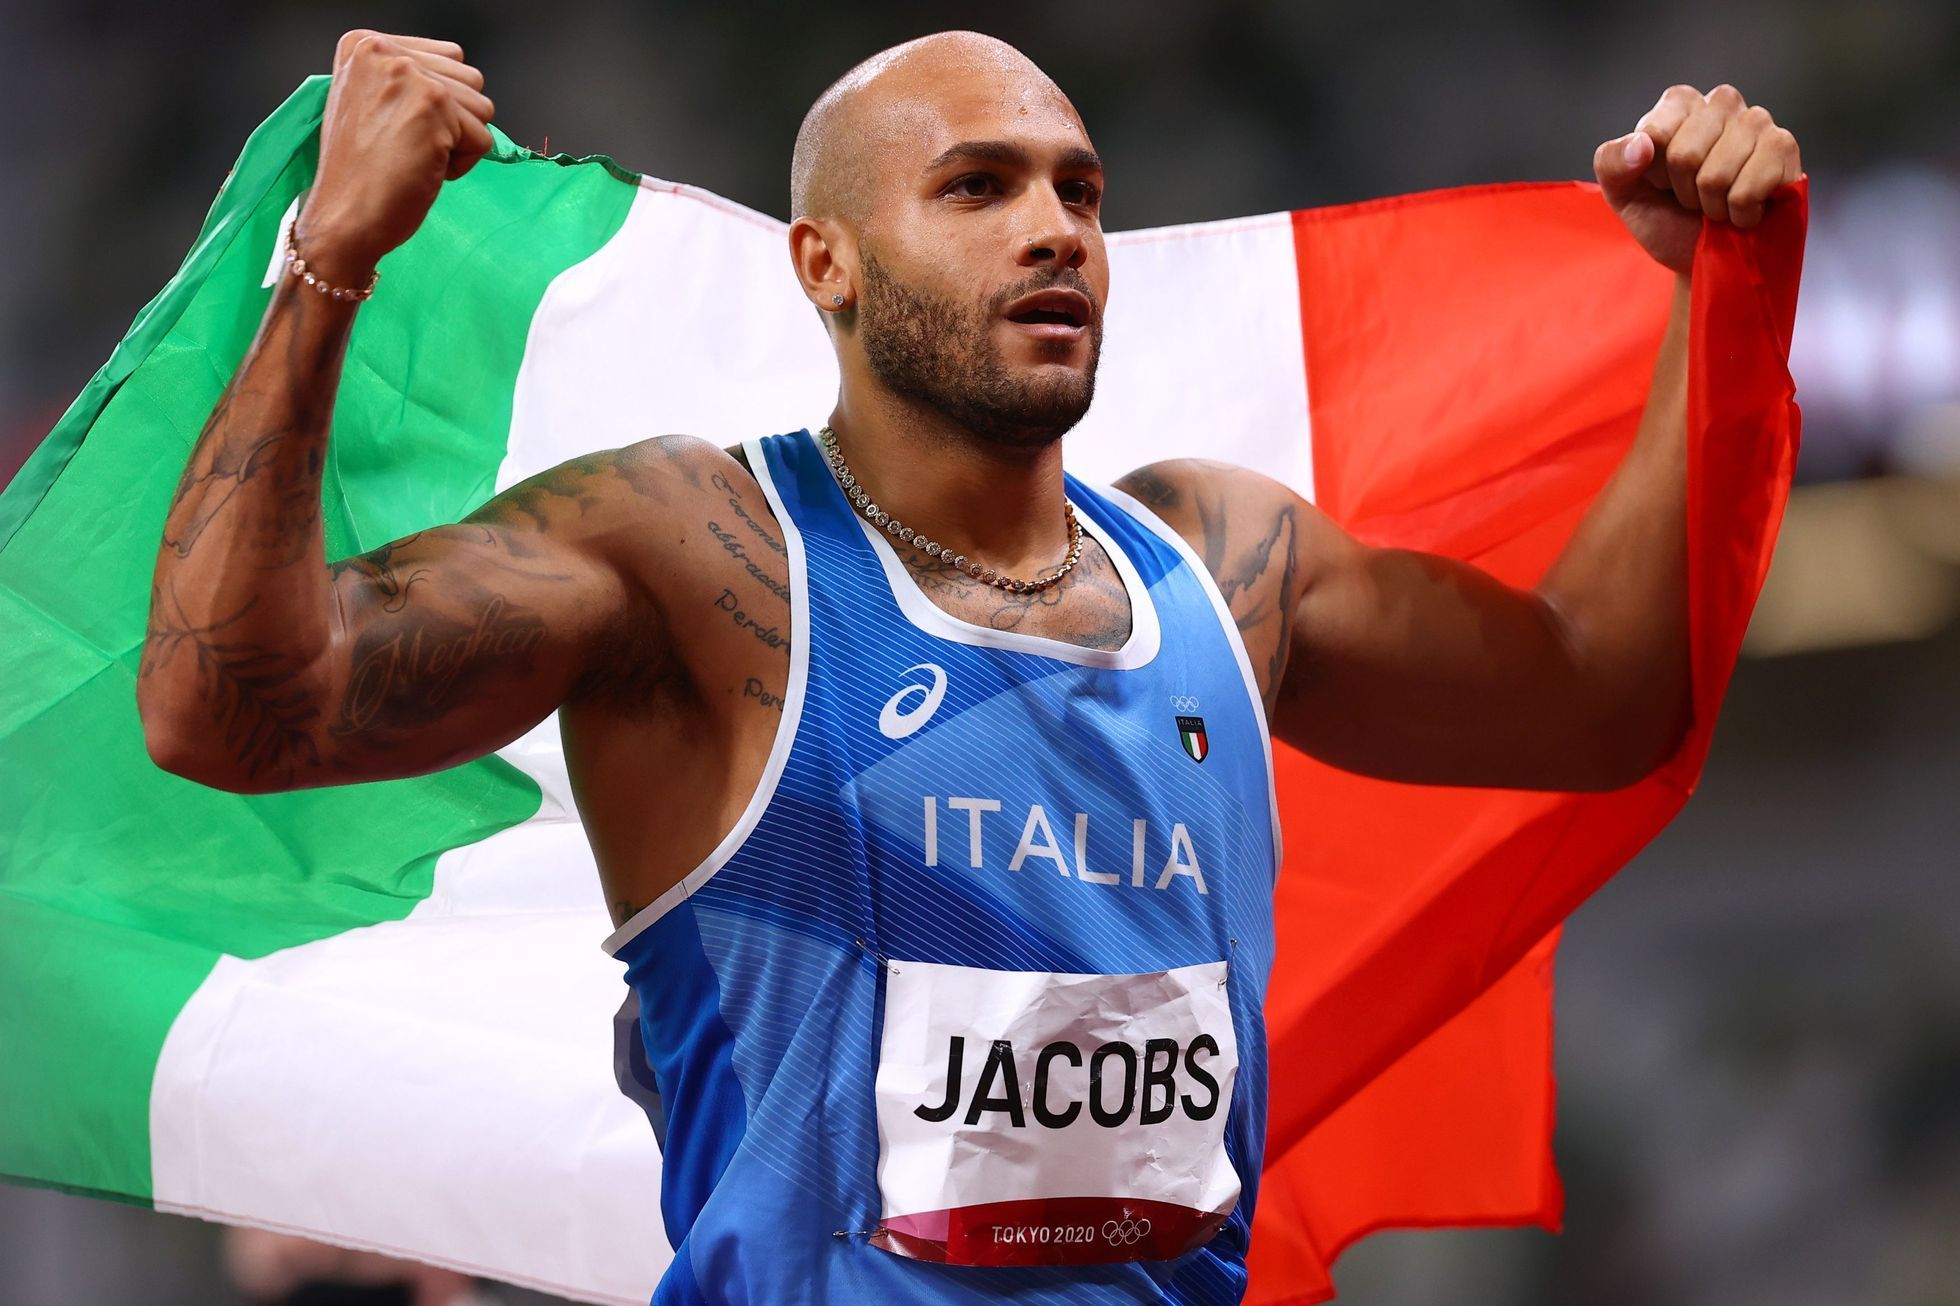 Italský sprinter Marcell Jacobs slaví vítězství v závodě na 100 metrů na olympiádě v Tokiu